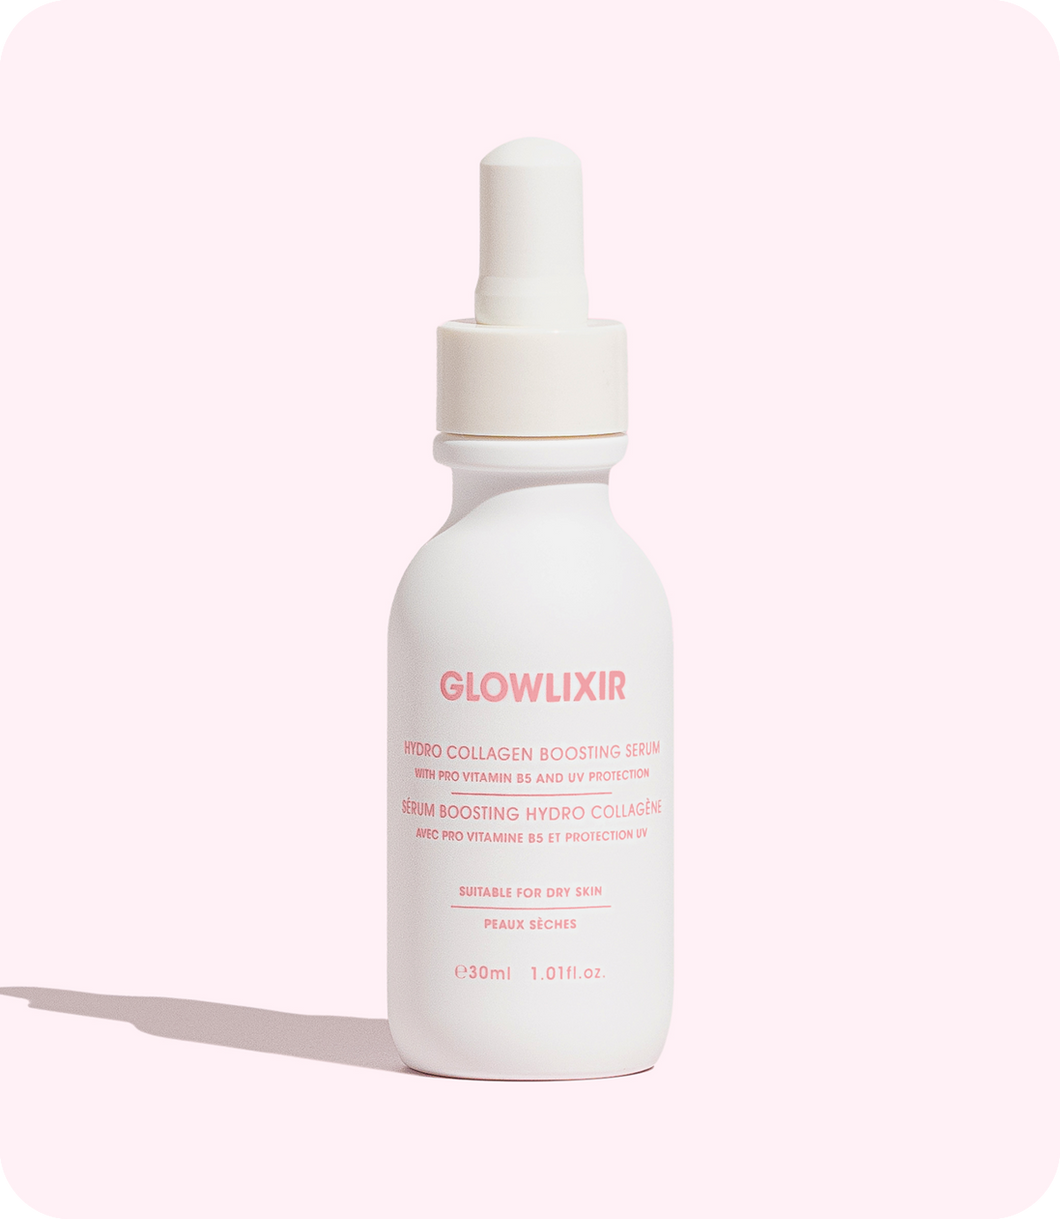 Glowlixir Hydro Collagen Boosting Serum bottle on a pink background